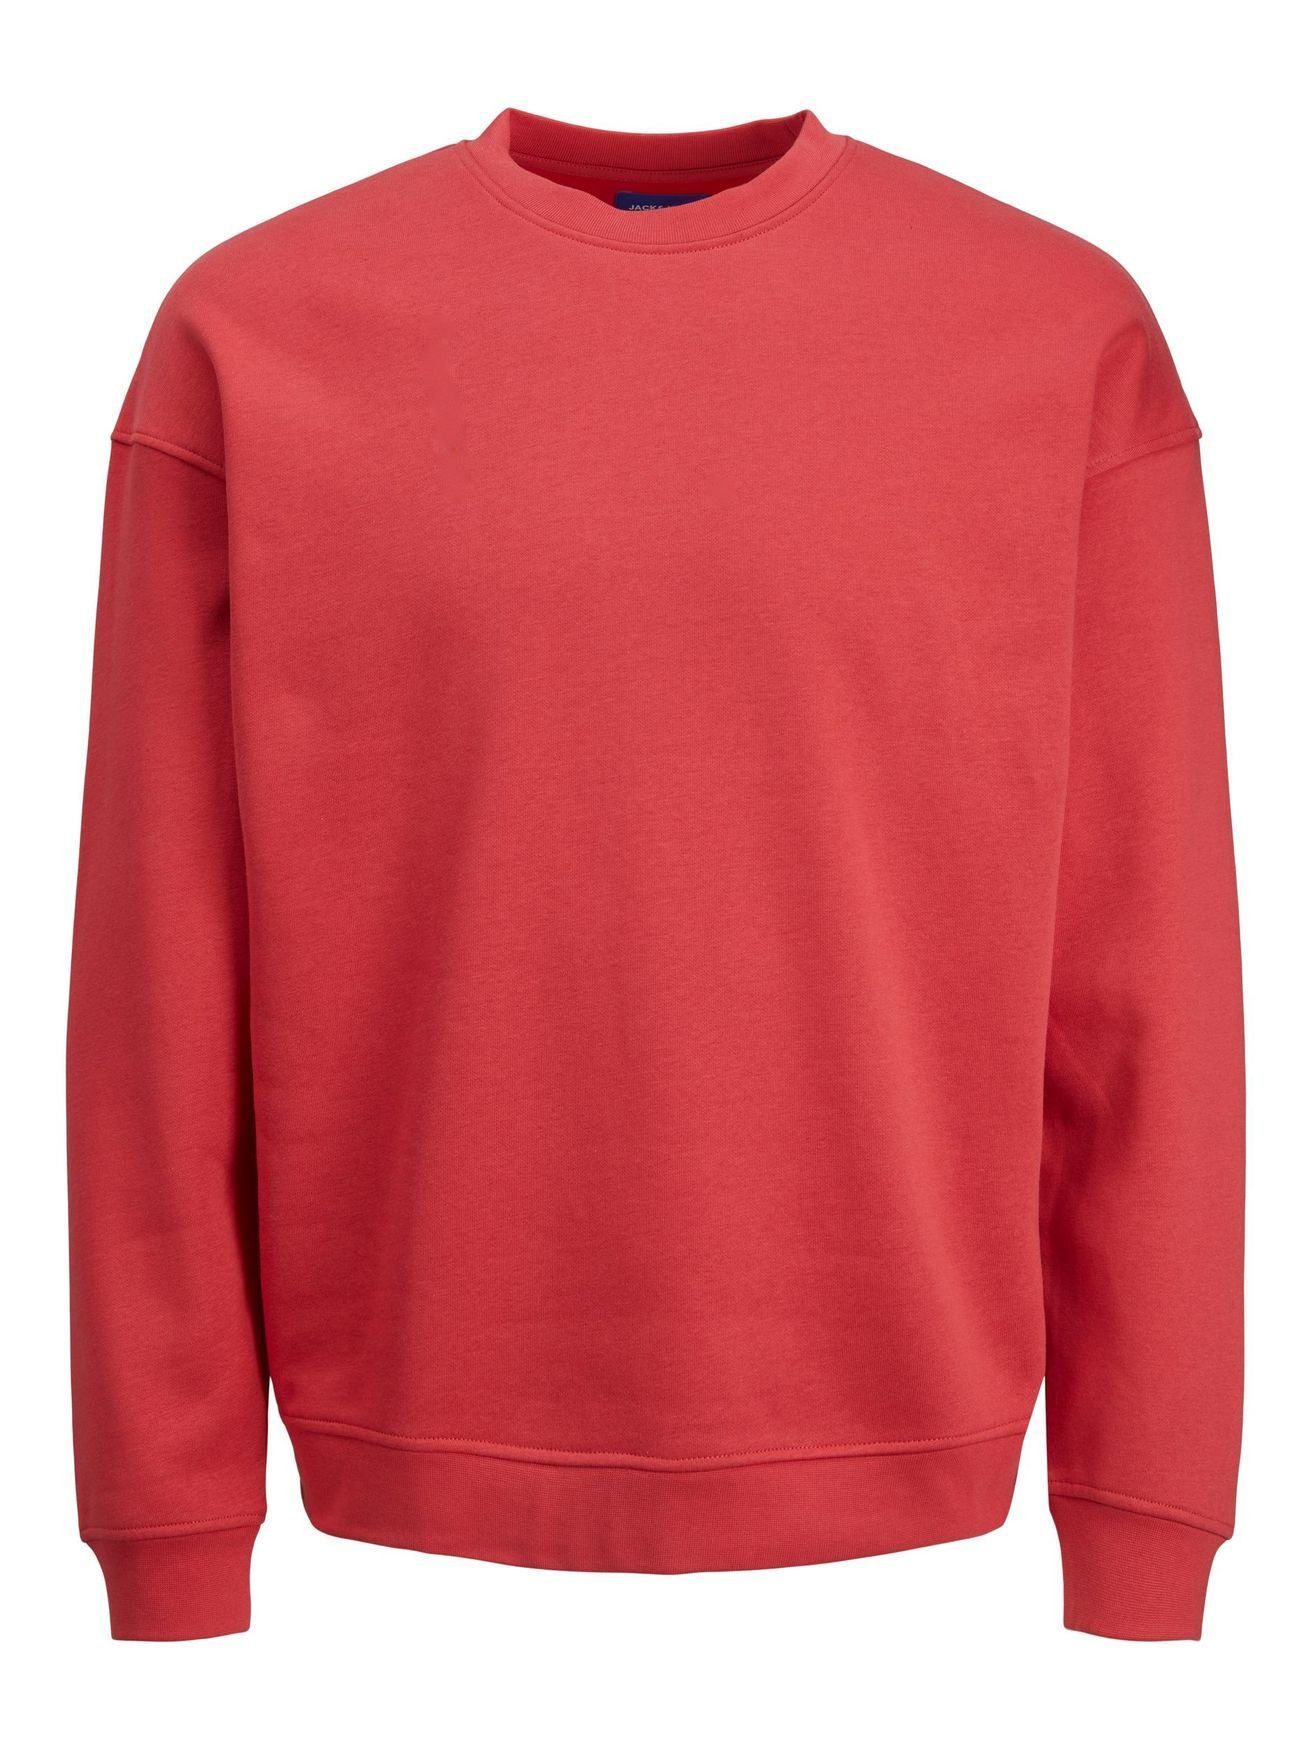 Rot Langarm Shirt ohne Pullover JORBRINK 4508 Sweatshirt Sweater & Kapuze Rundhals Jones in Jack Basic